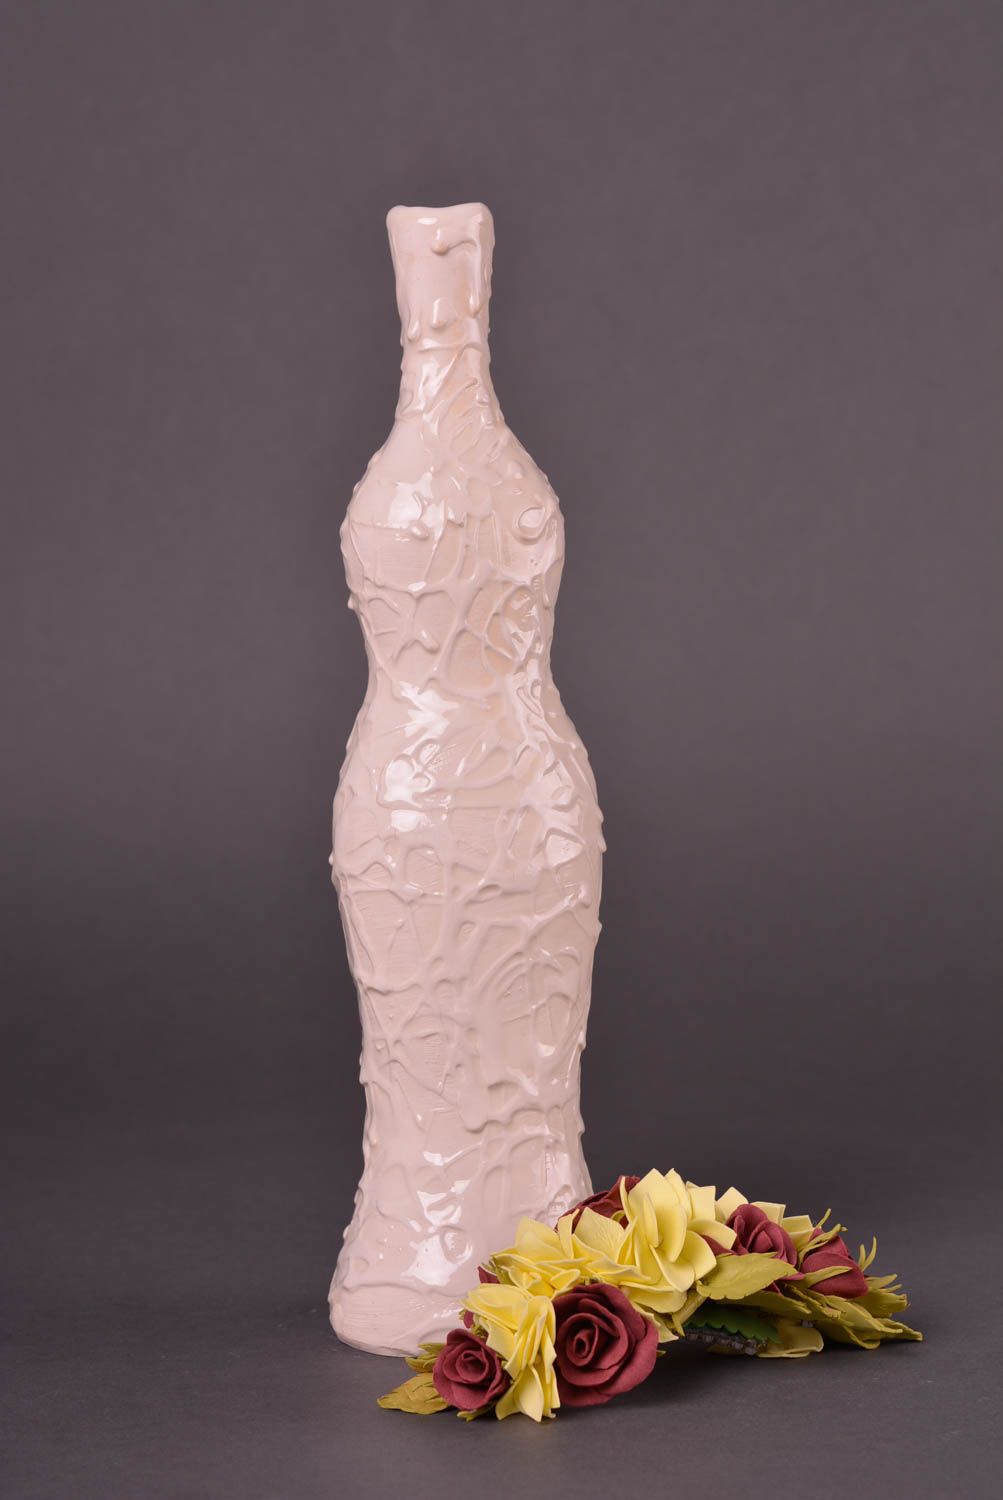 Подарок ручной работы керамическая бутылка 500 мл глиняная бутылка необычная фото 1